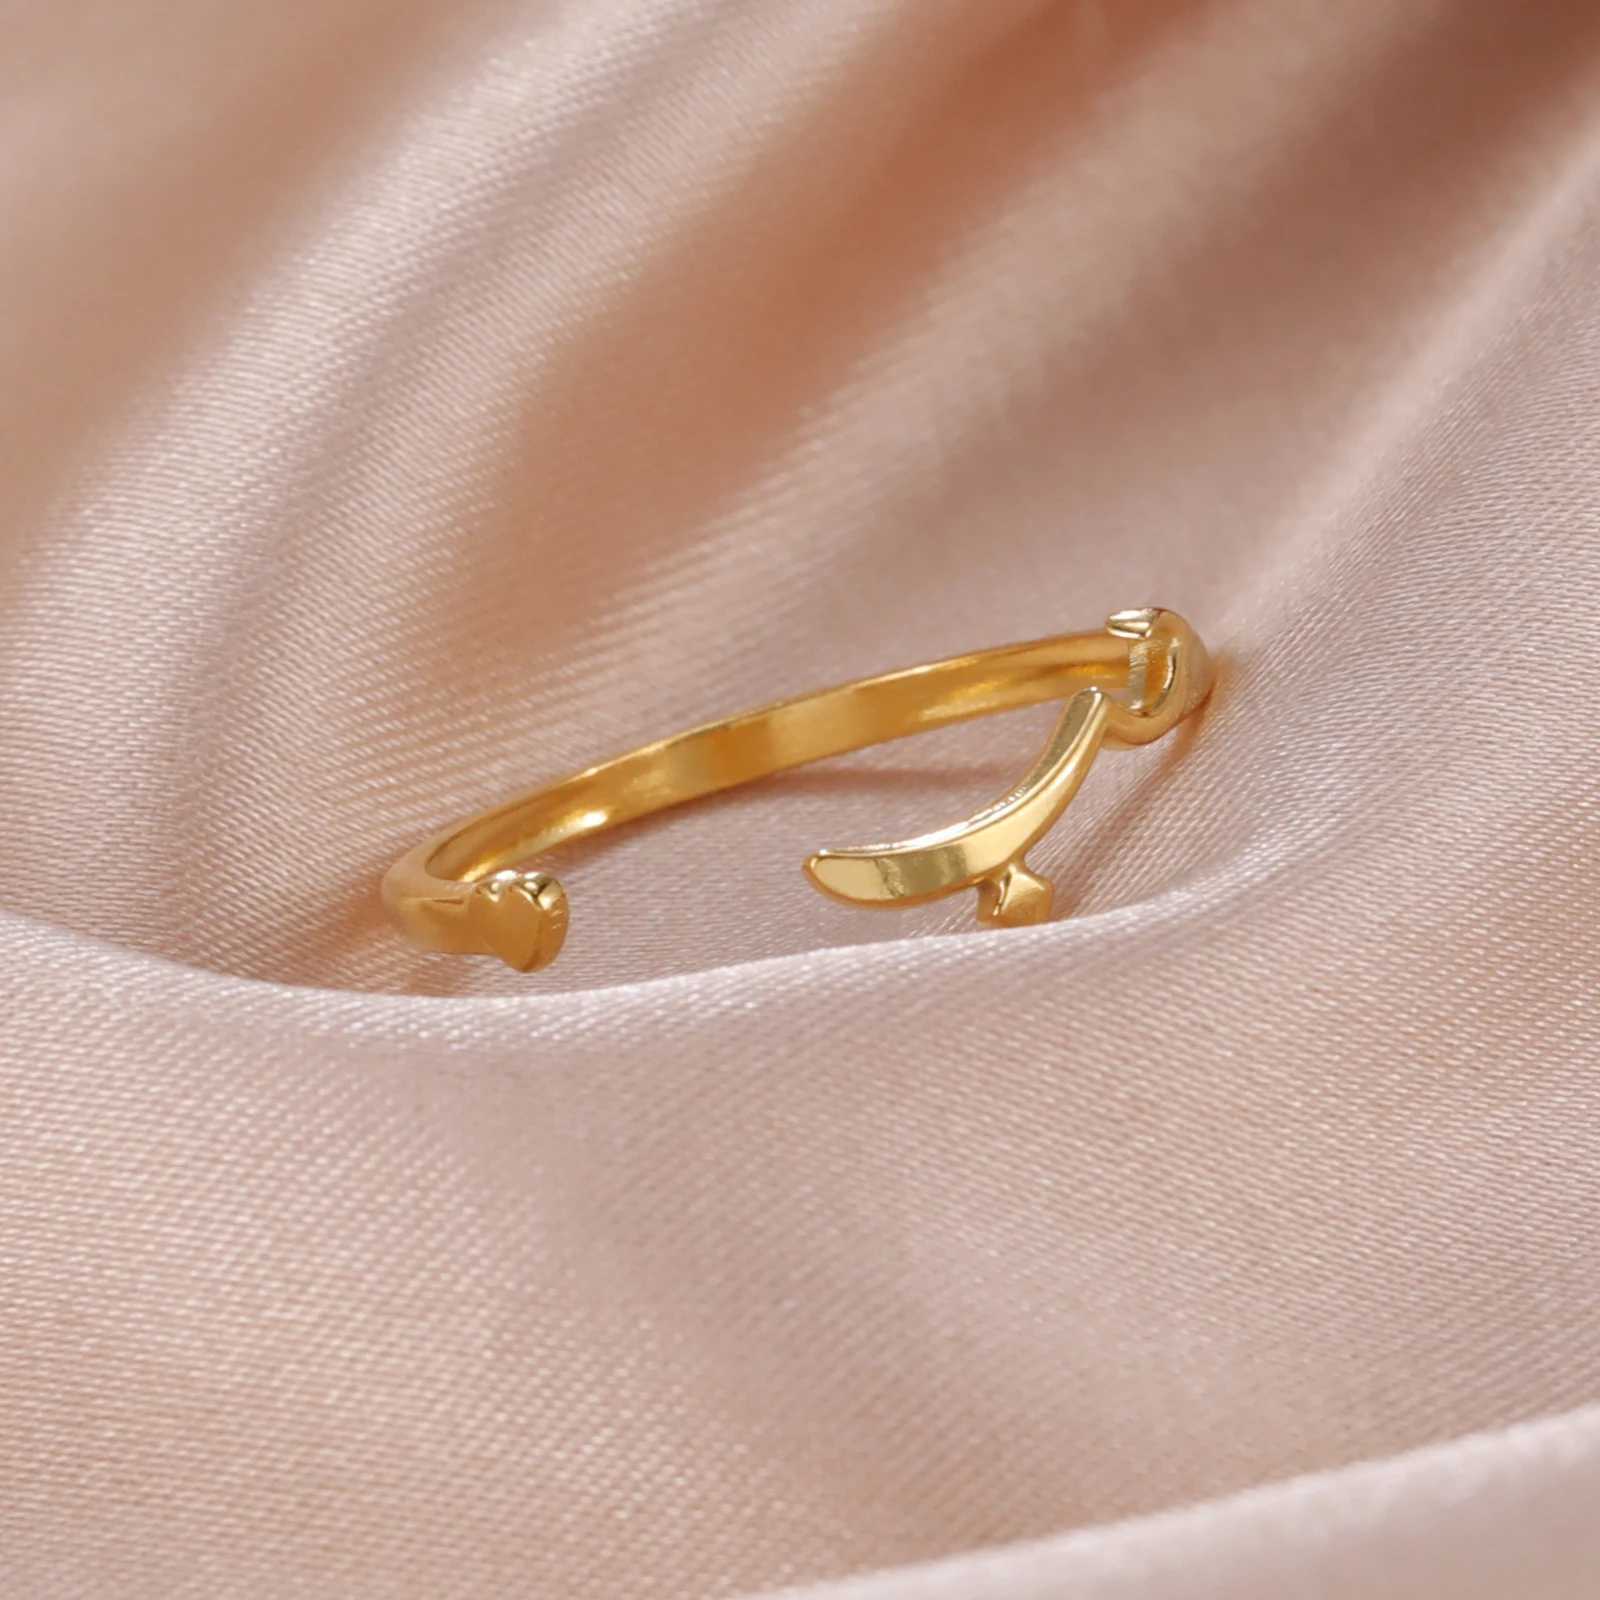 Anelli da matrimonio Skyrim Acciaio inossidabile Anello arabo Arabo Colore oro Anelli di dito regolabili Adora il regalo di matrimonio di gioielli islamici musulmani donne